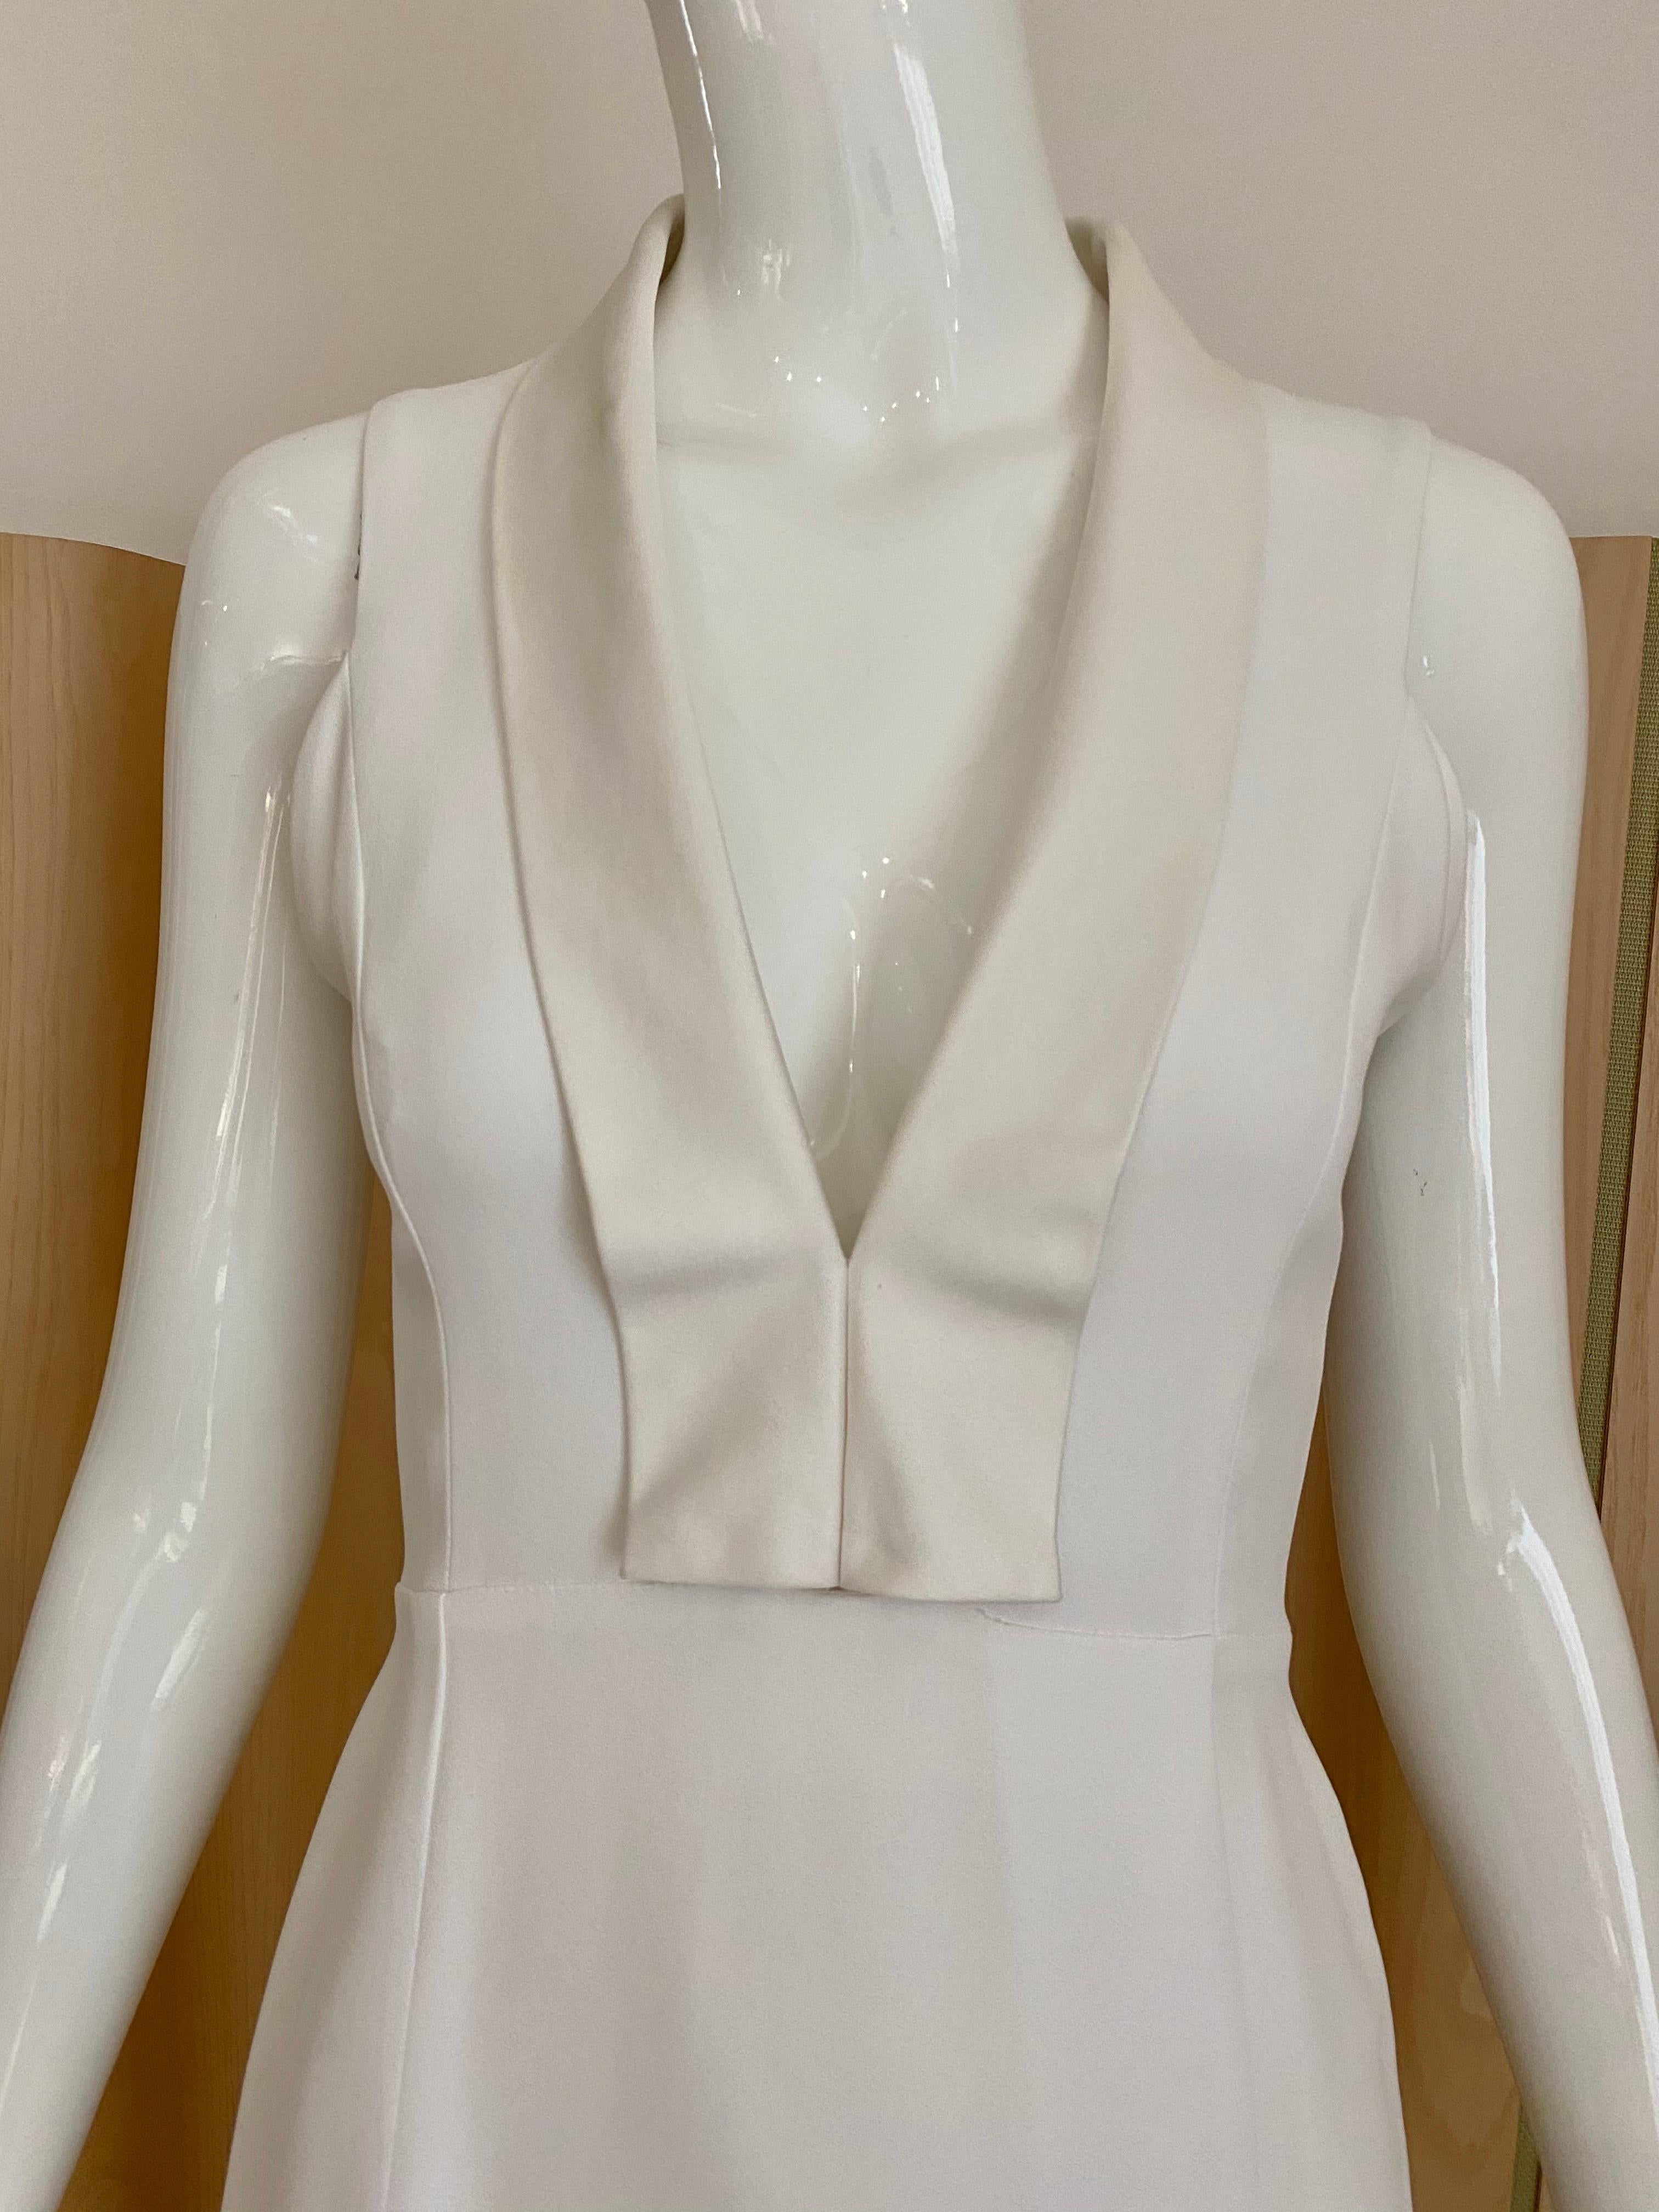 90er Jahre Gianfranco Ferre Weißes Seidenkleid ohne Ärmel mit Satinrevers am V-Ausschnitt.
Größe: 40italy, passend für Größe 6 US
Perfekt für eine Hochzeit oder ein Probeessen. 